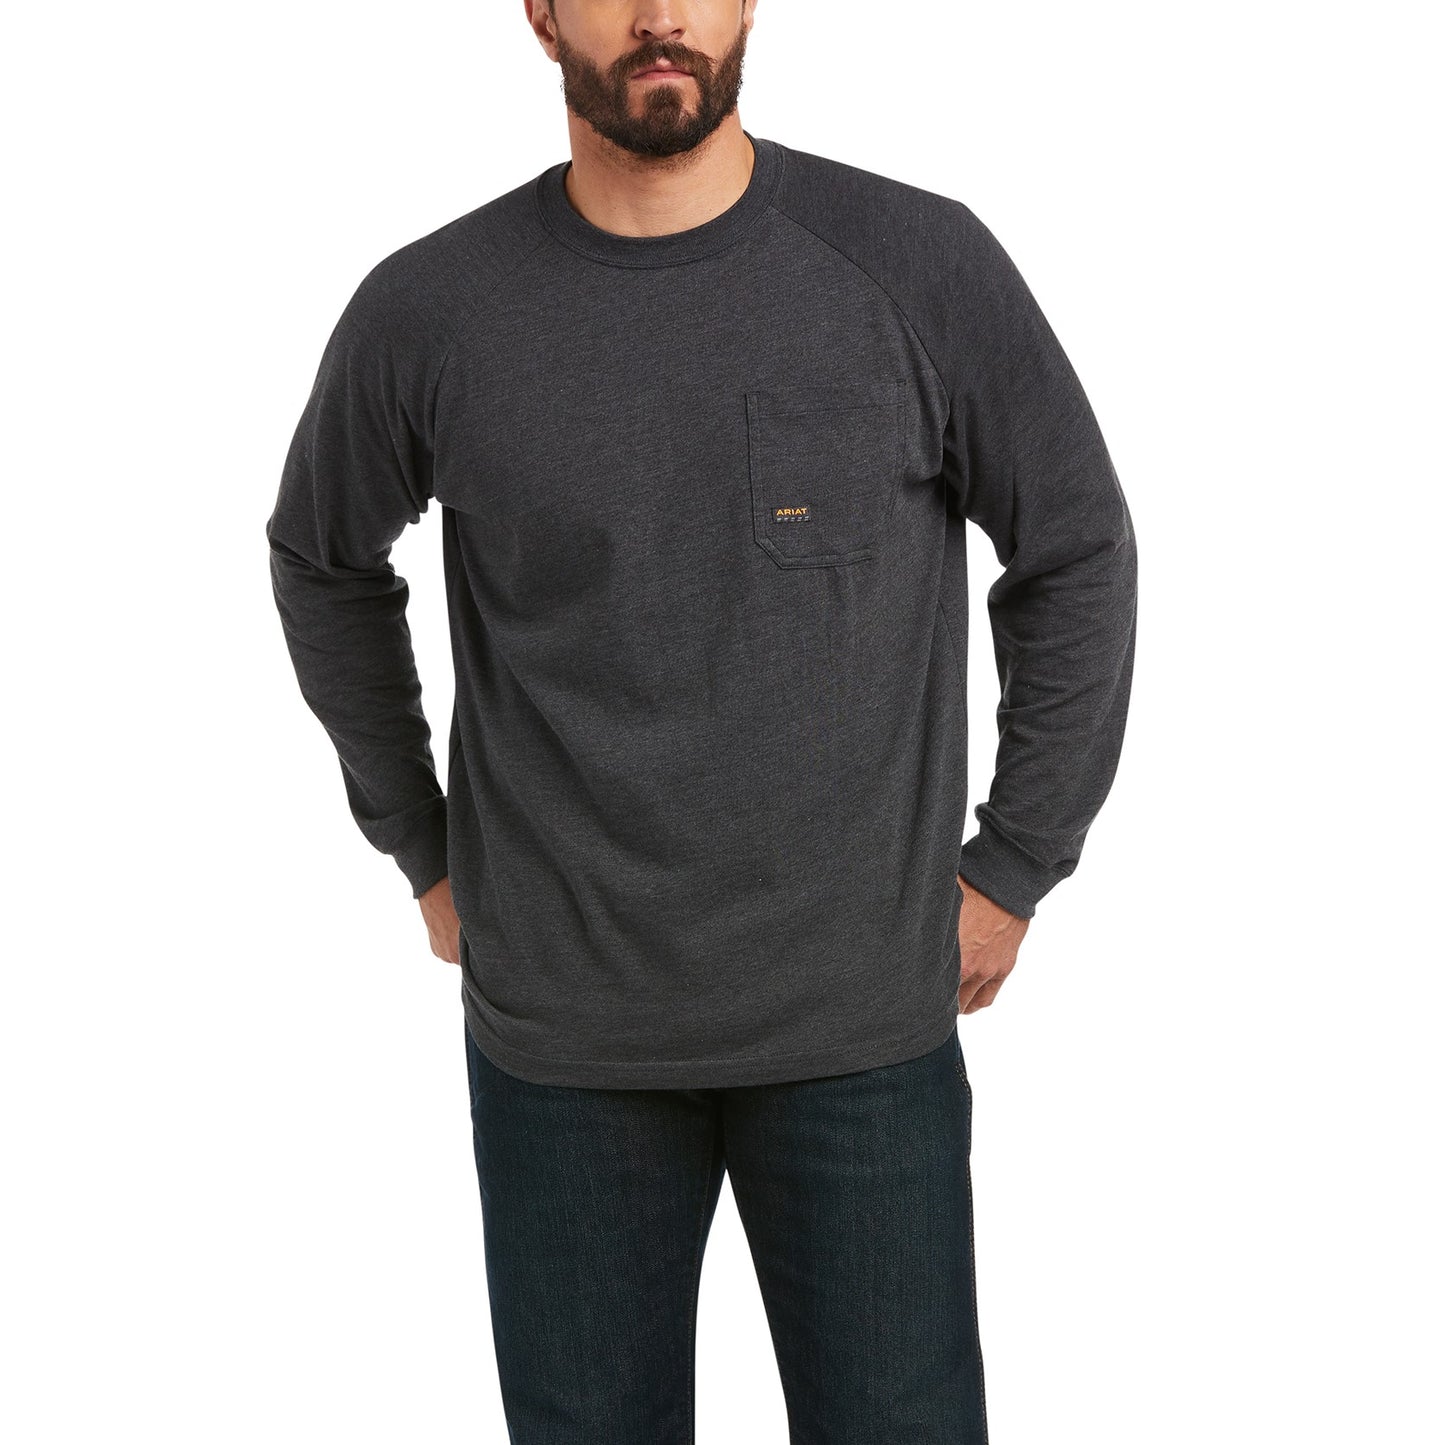 Ariat Men's Rebar CottonStrong™ Brand Flag Charcoal LS T-Shirt 10037700